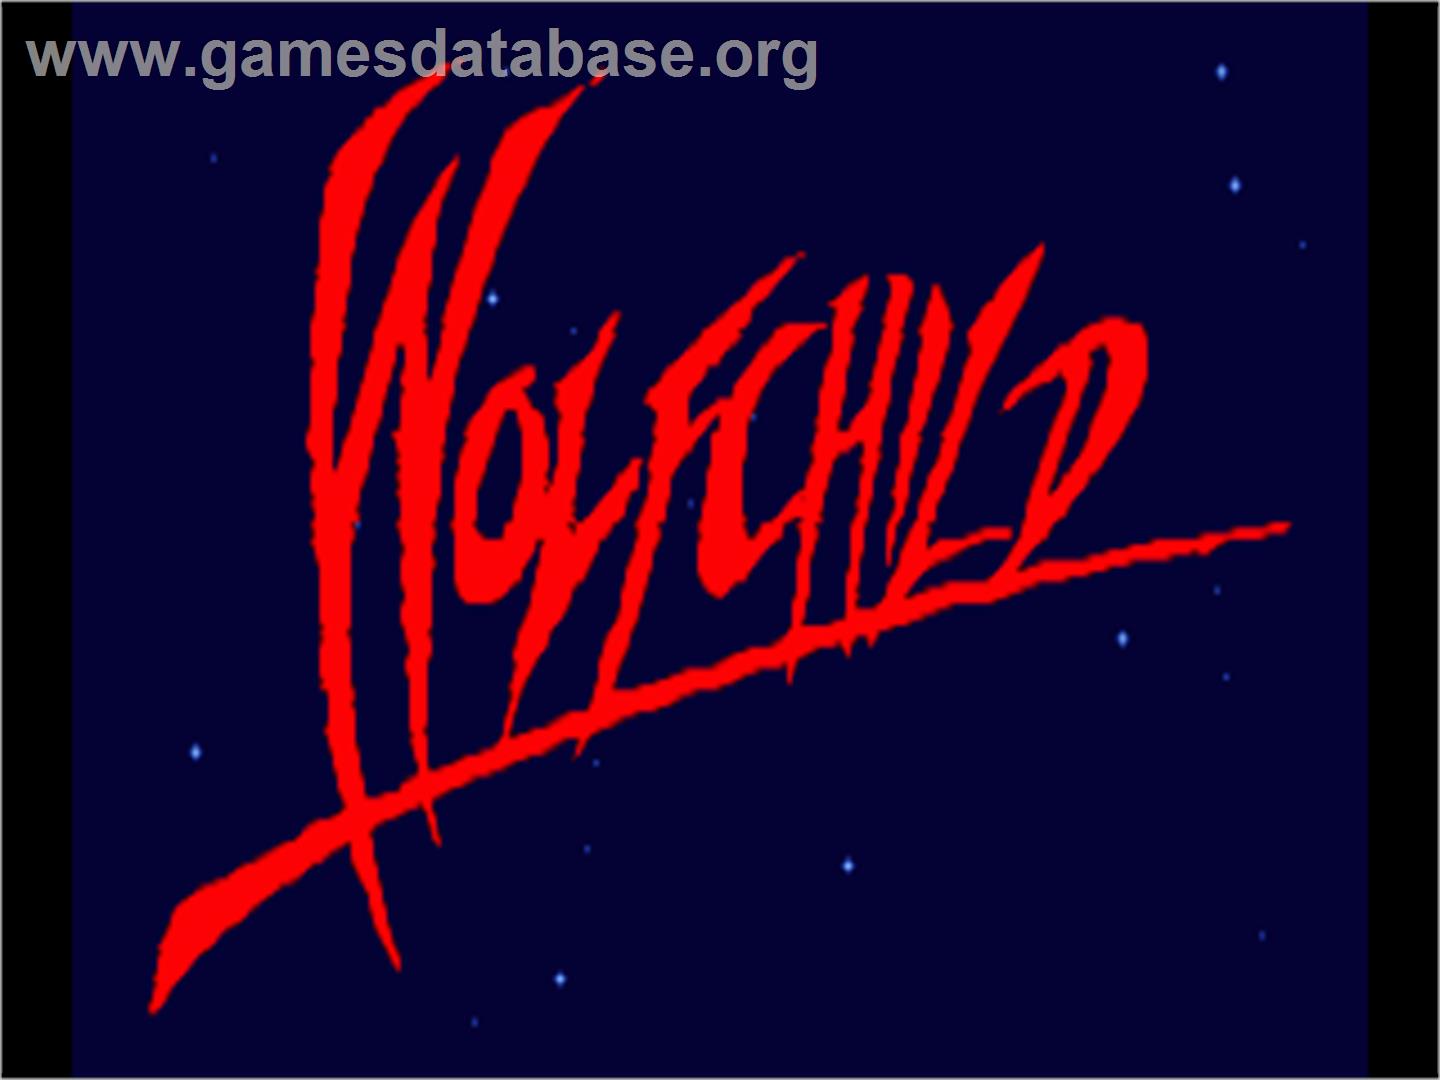 Wolfchild - Commodore Amiga - Artwork - Title Screen